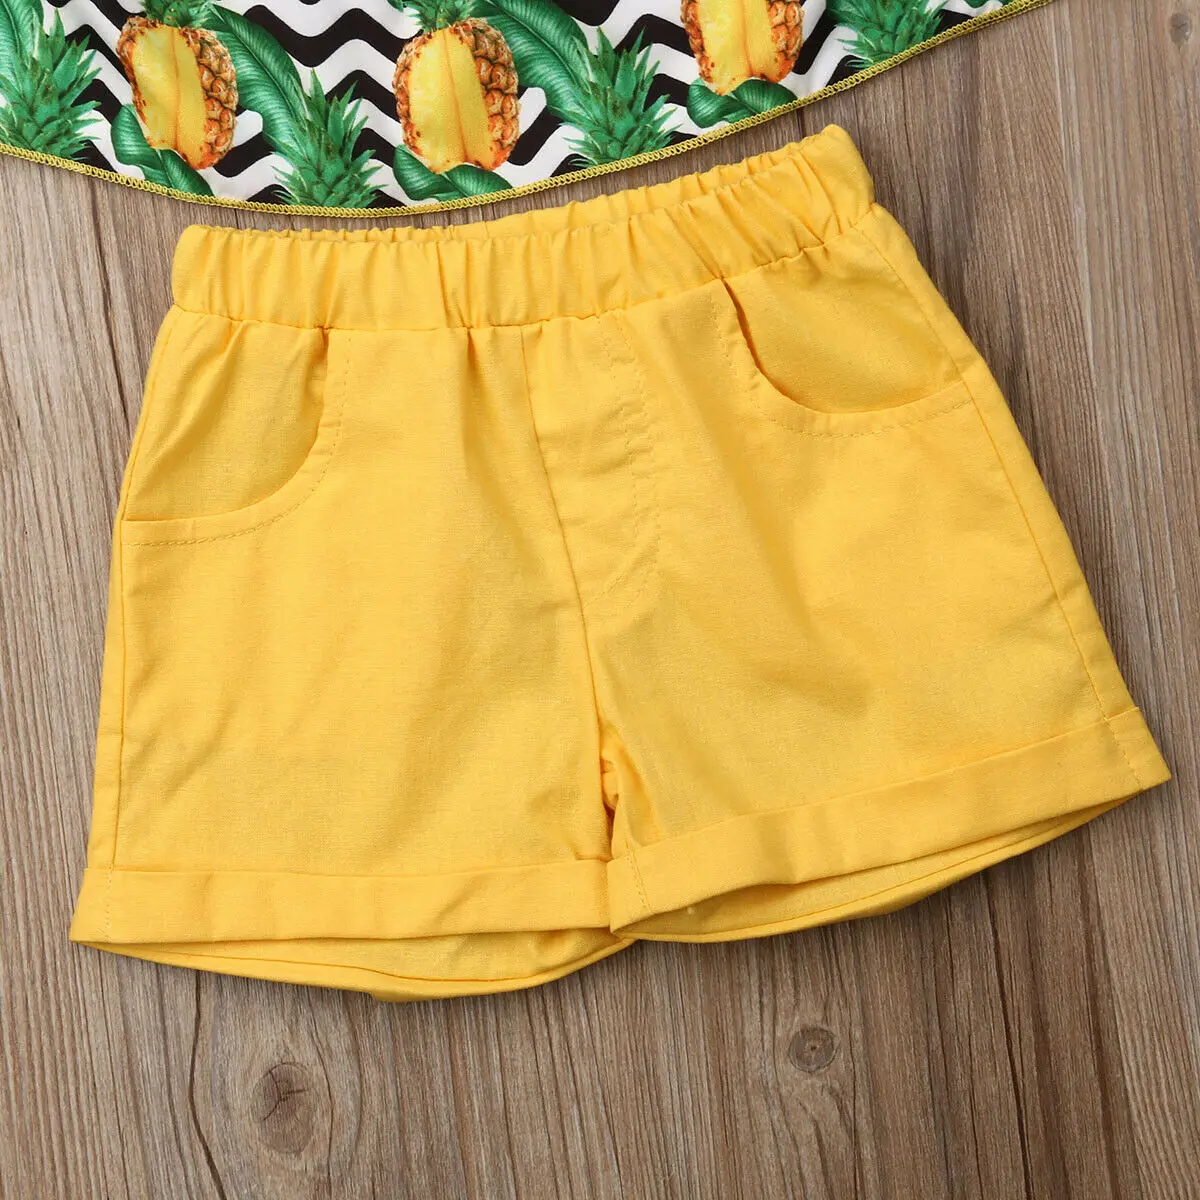 Комплекты одежды с принтом ананаса для маленьких девочек, топы с короткими рукавами и открытыми плечами, футболки, повседневные шорты, брюки